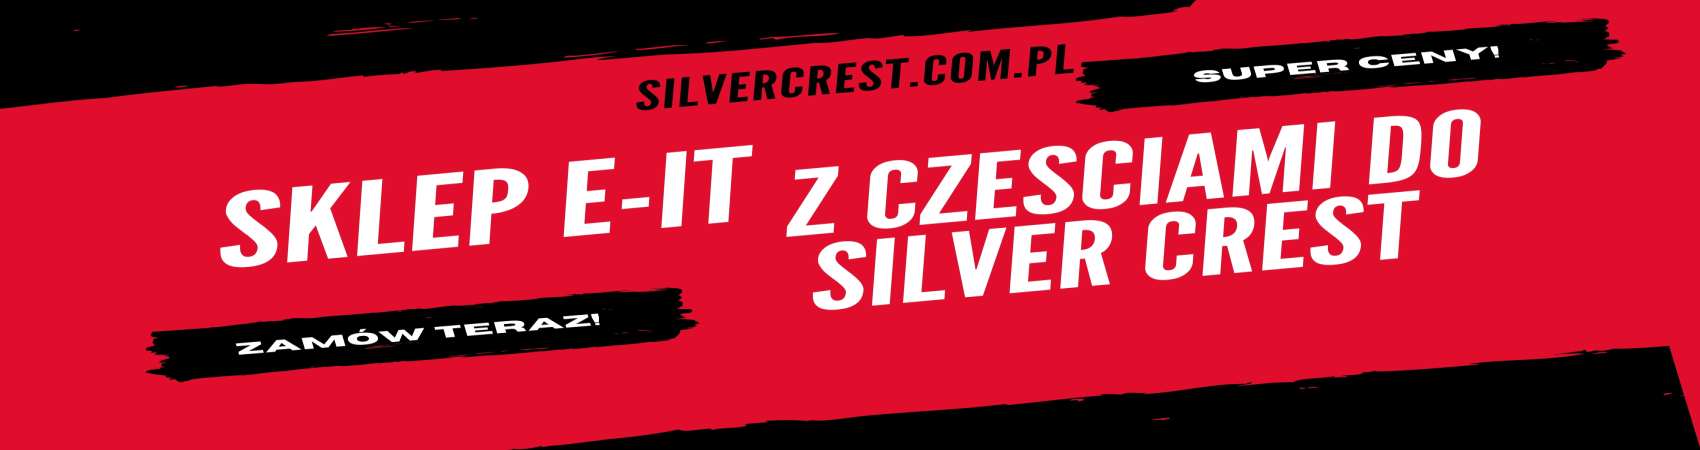 silvercrest.com.pl  sklep e-IT z częściami do Silvercrest i Hoffen